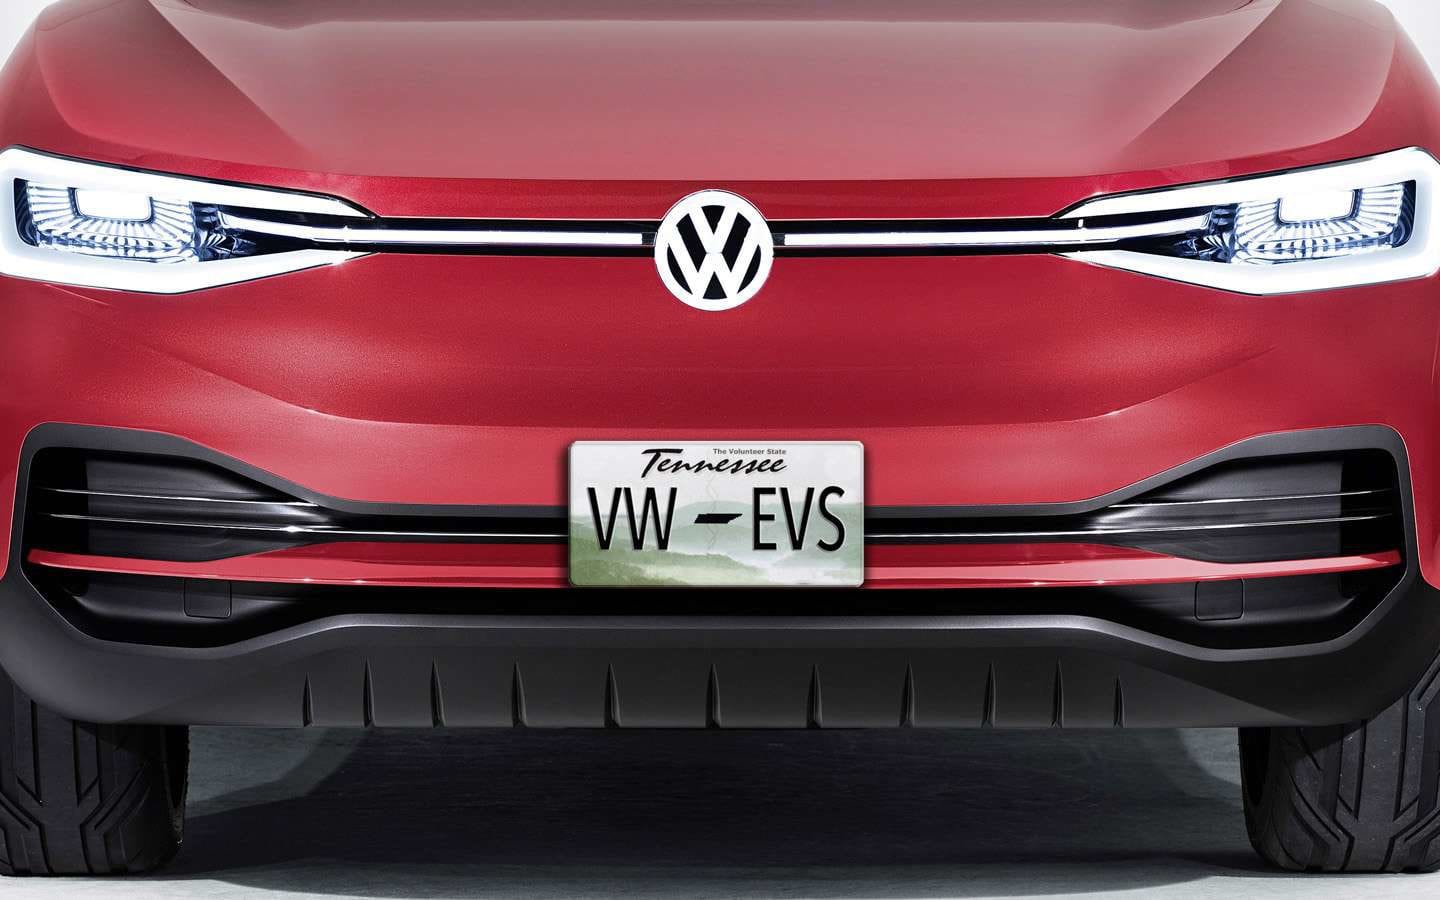 Volkswagen To Build EVs in Chattanooga Beginning 2022